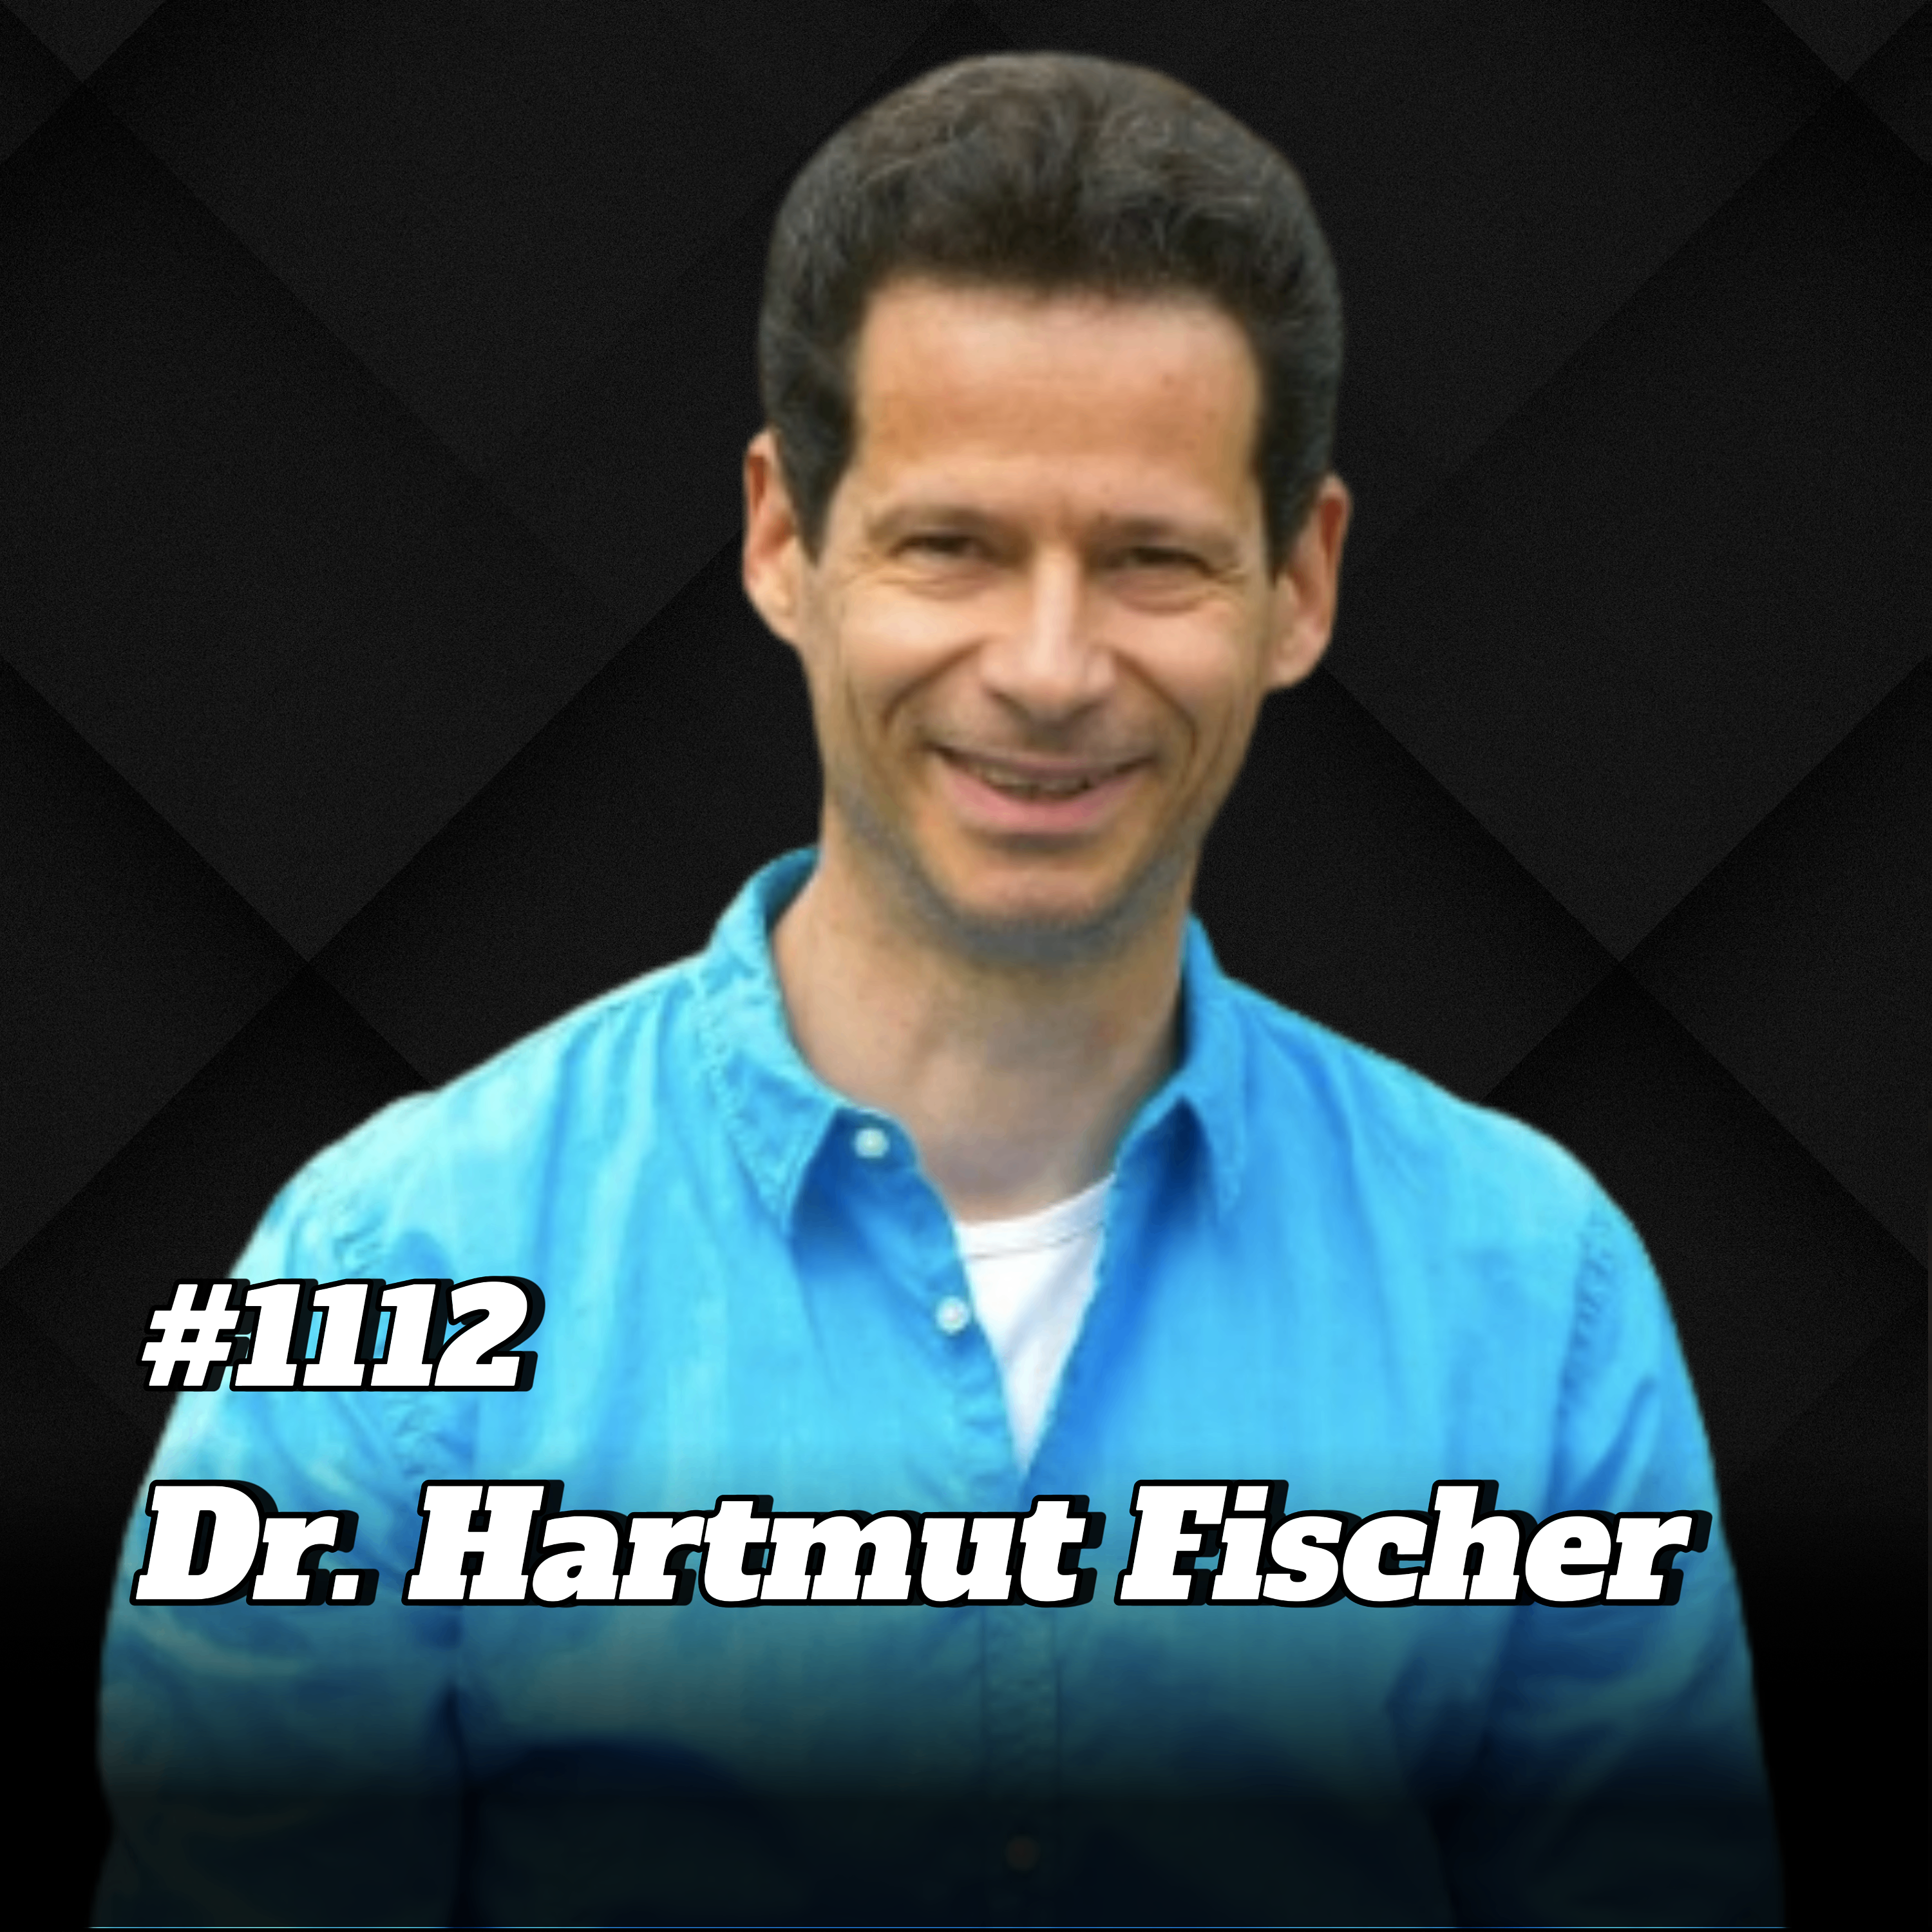 Das neue Wundermittel DMSO: Steigere Deine Gesundheit und sportliche Leistung I Dr. Hartmut Fischer #1112